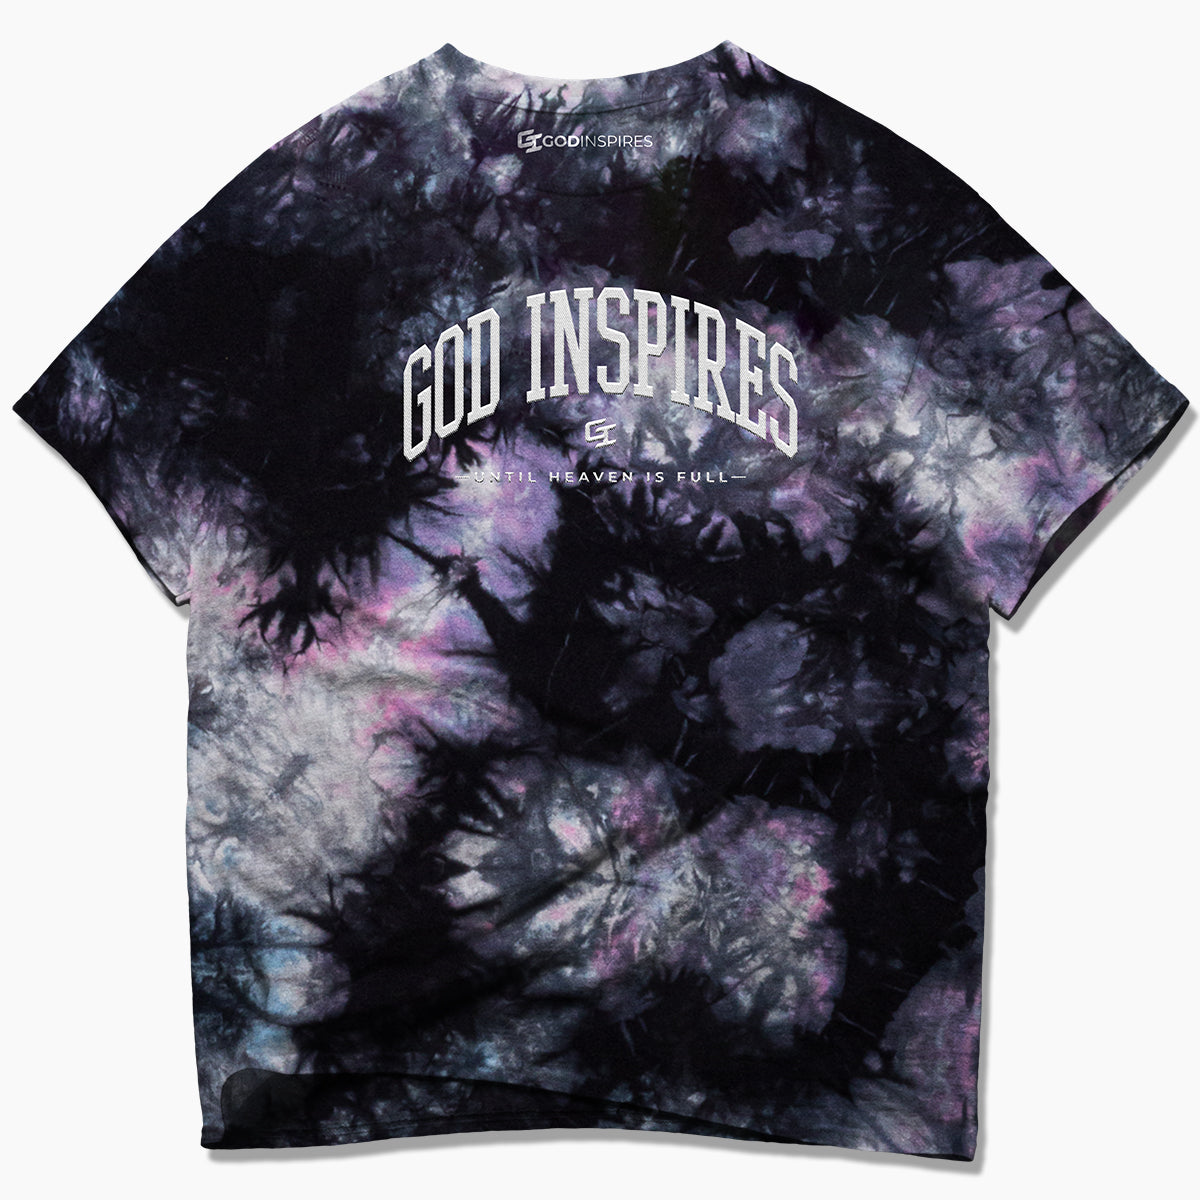 'God Inspires' Oversized Tie-Dye T-Shirt